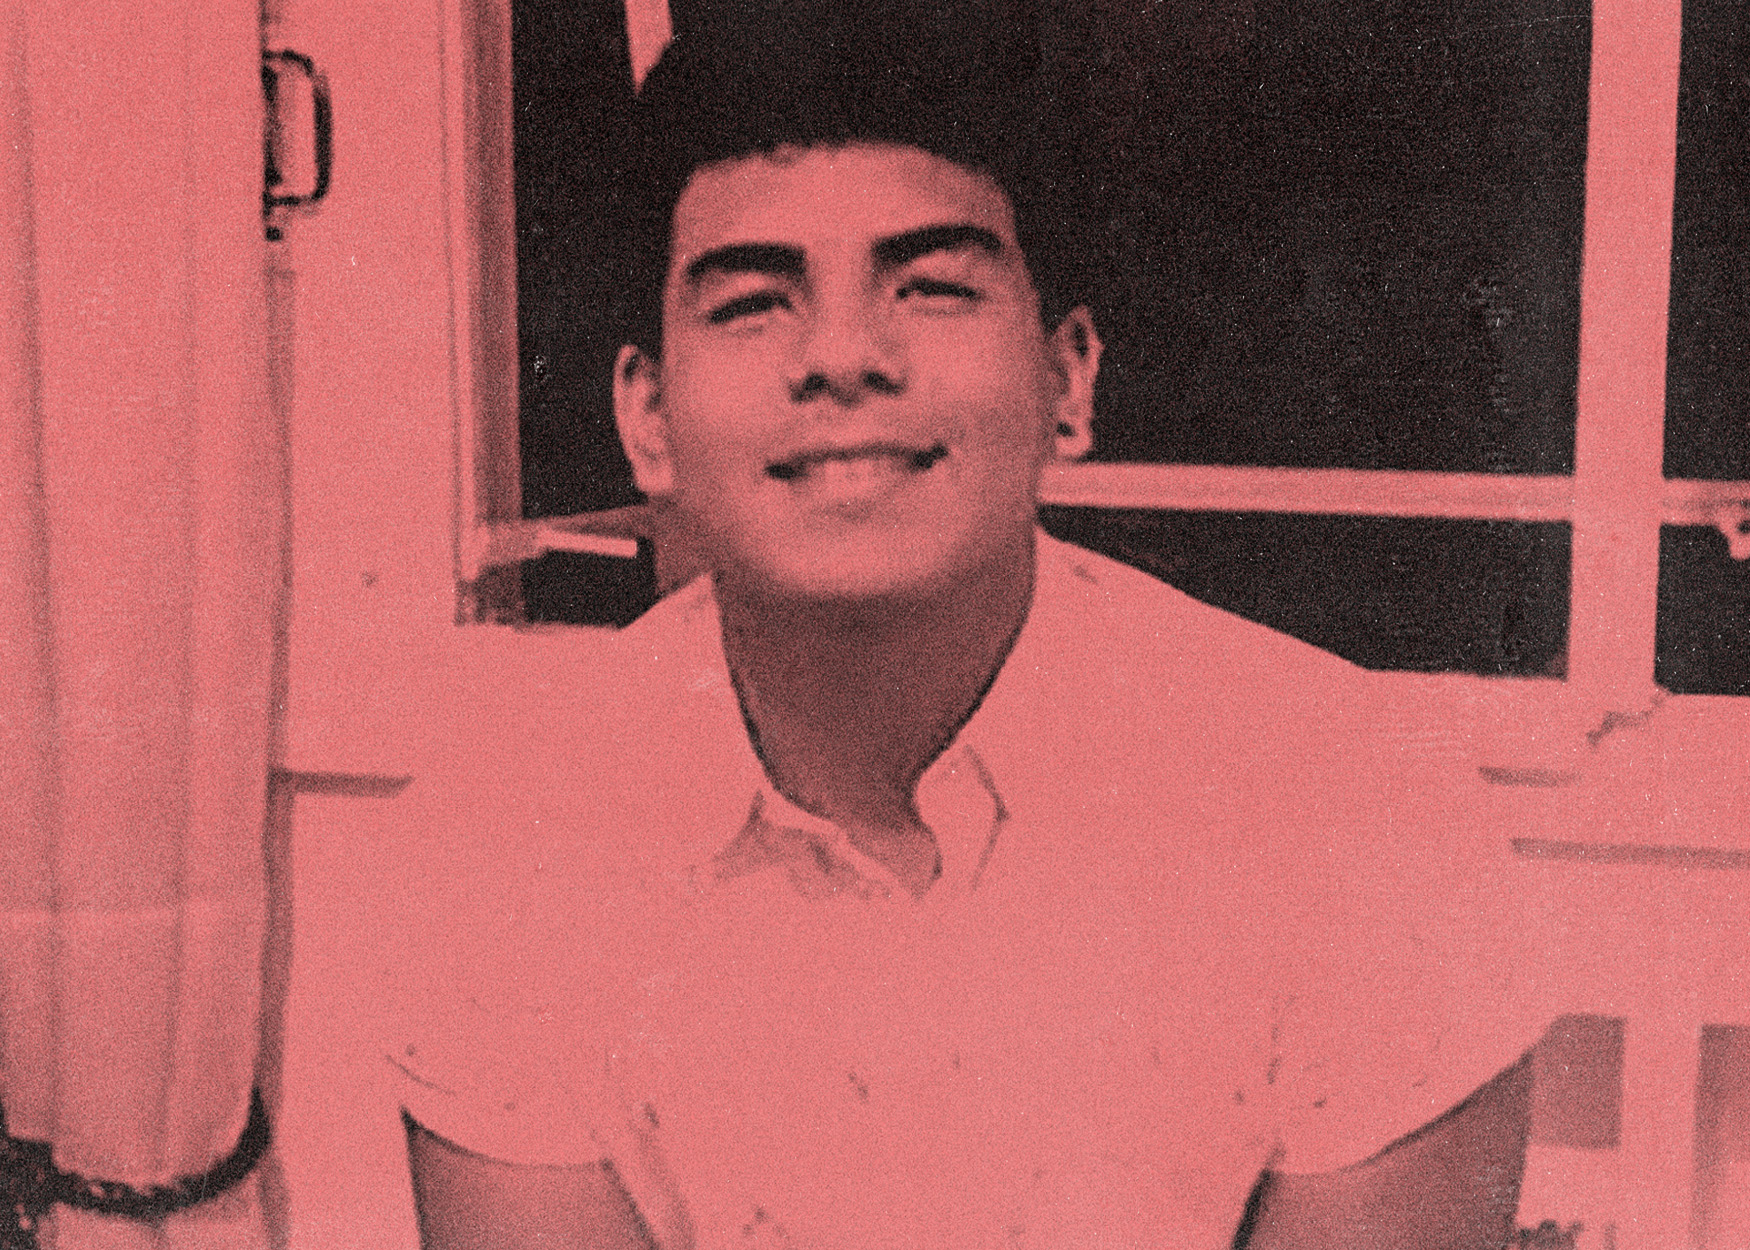 El asesinato de Fernando Báez Sosa: un crimen racista, machista y de clase